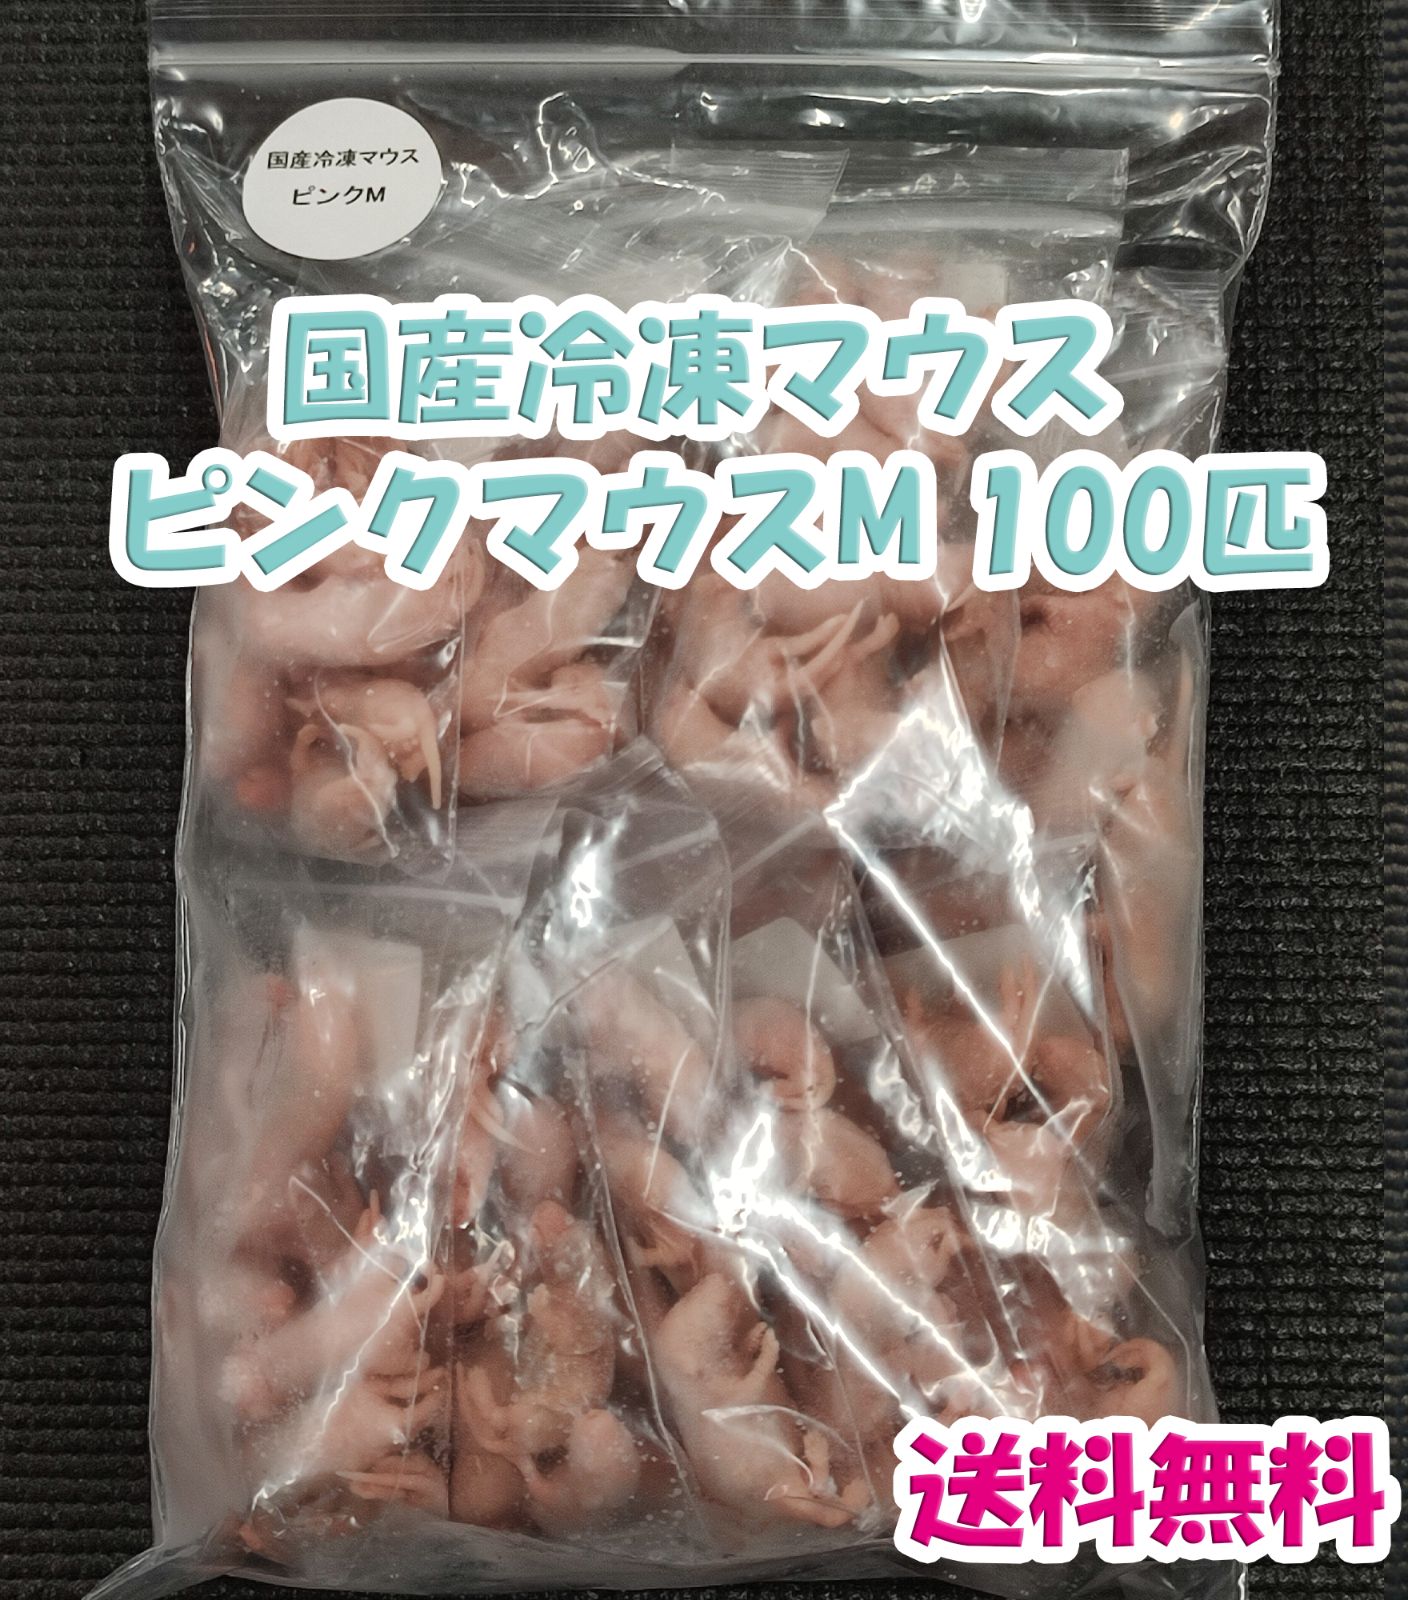 国産冷凍マウス ピンクS 100匹(地域限定送料無料) - 爬虫類